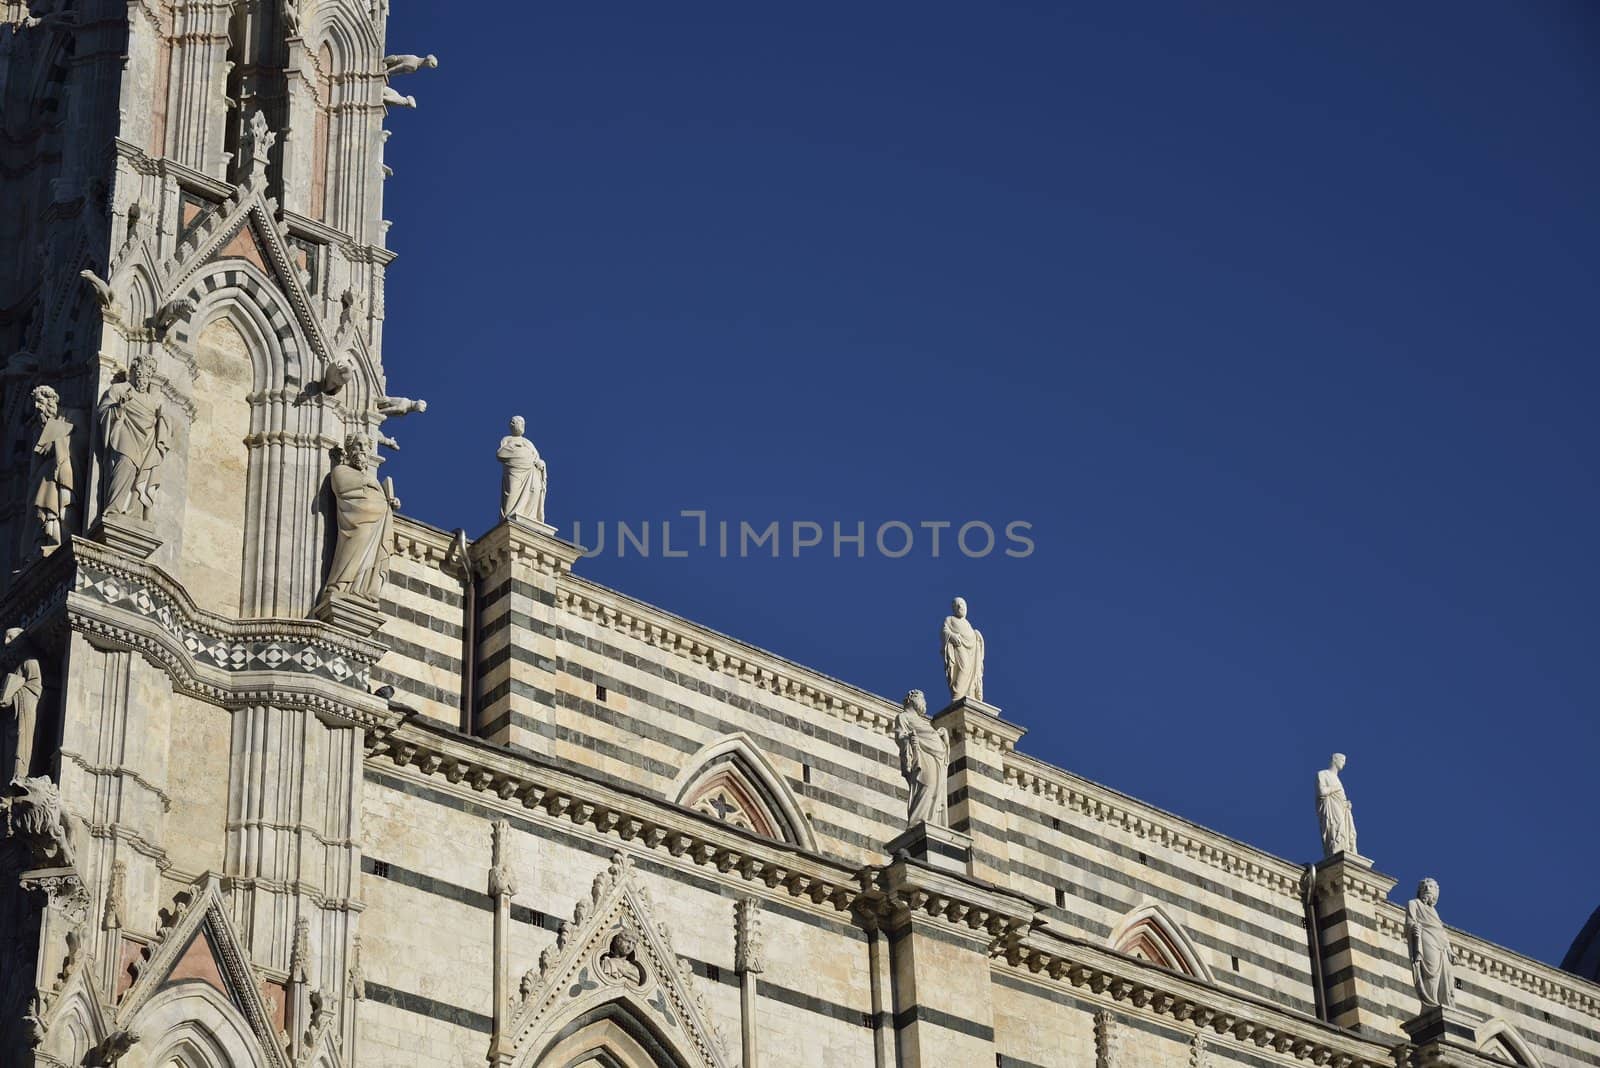 Duomo di Siena by mizio1970